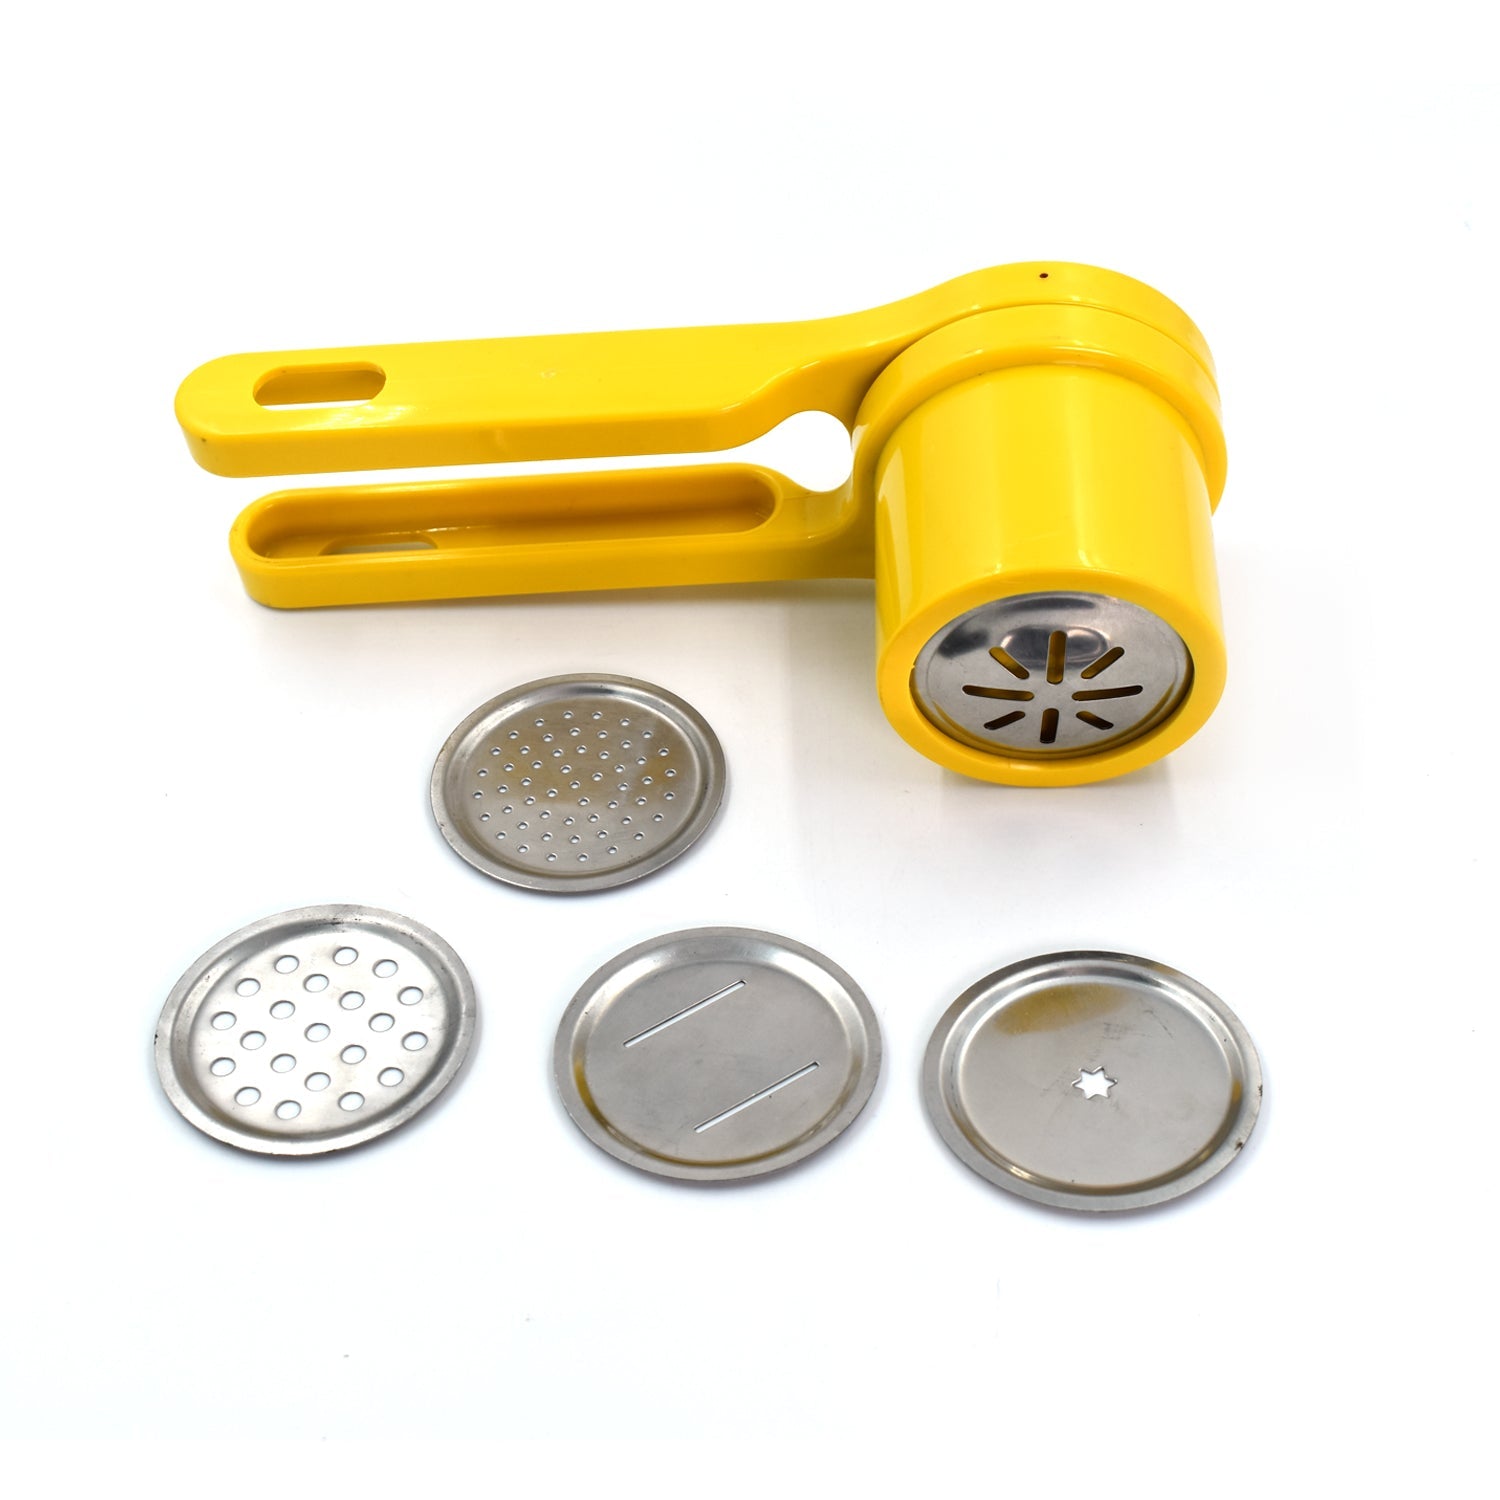 2875 Manual Hand Press Citrus Press Juicer/Lemon Squeezer Juicer Fruit Extractor Tool DeoDap